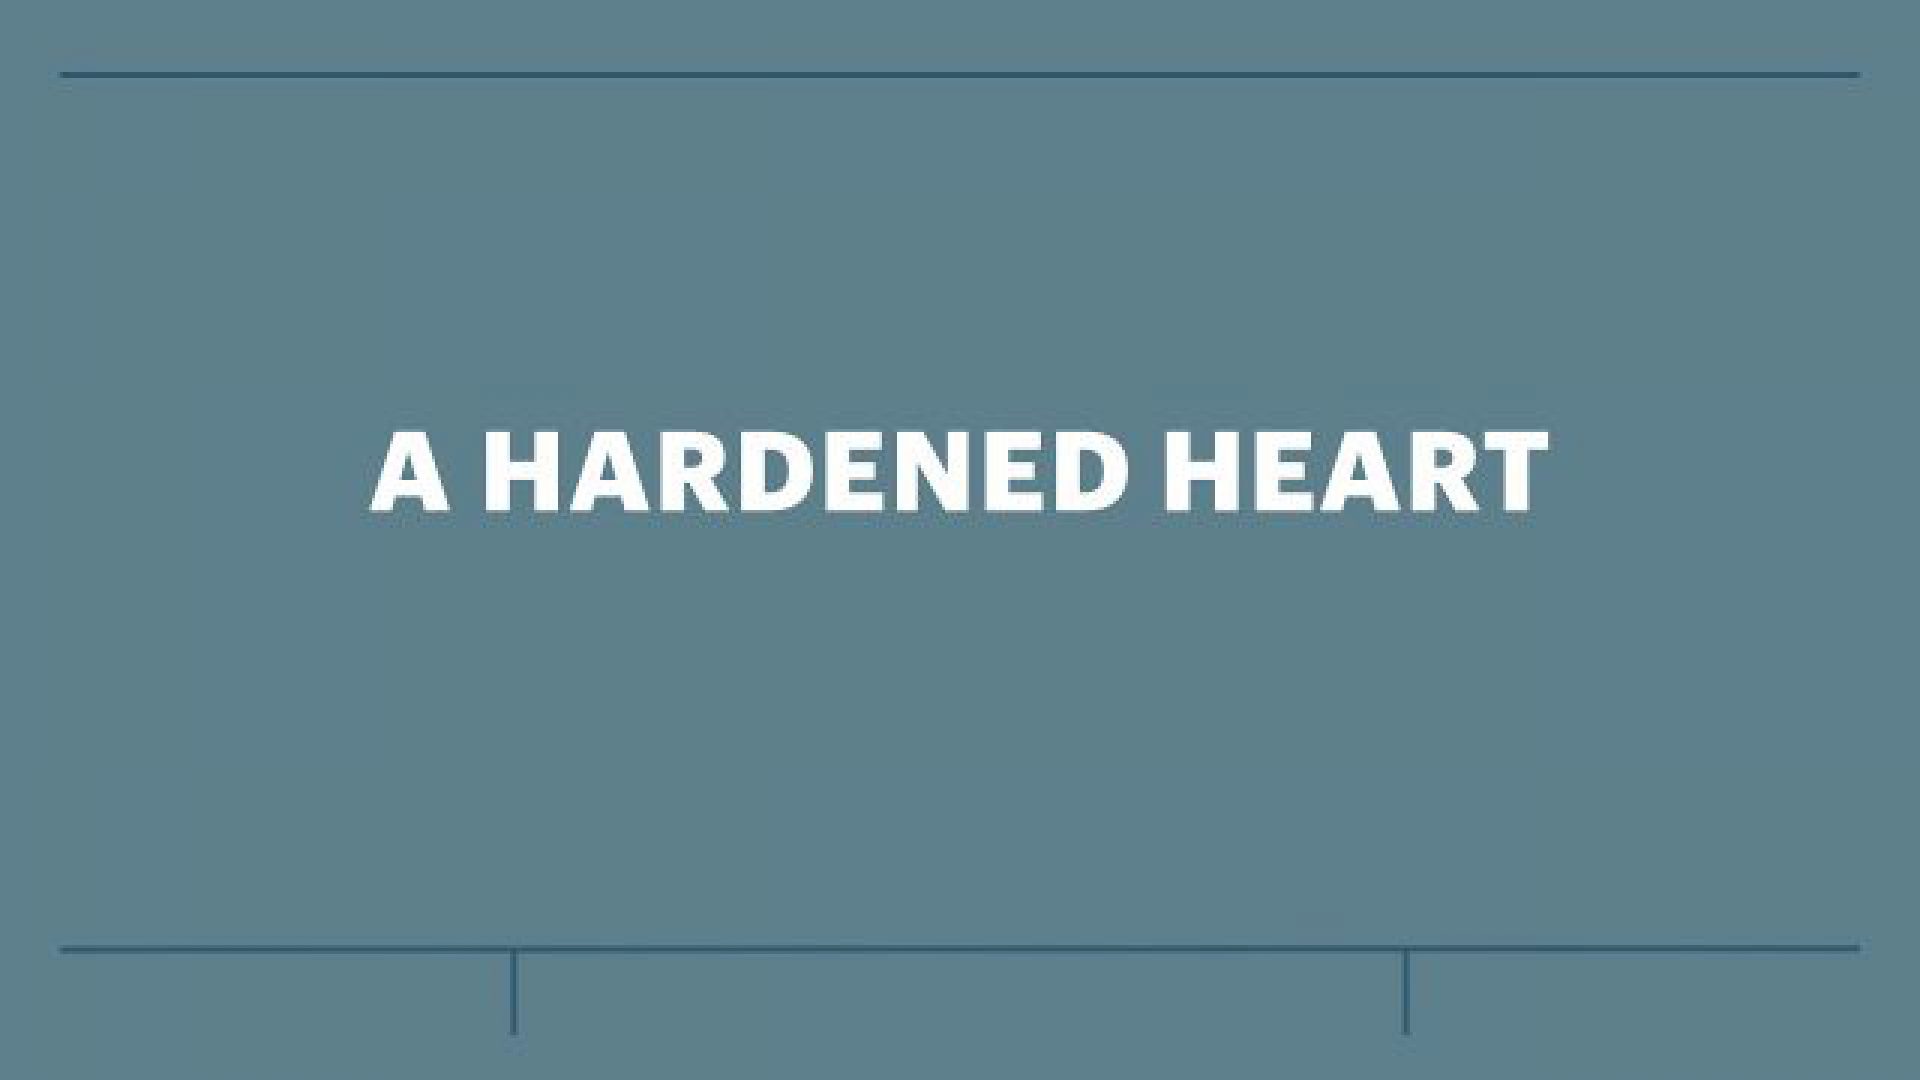 A HARDENED HEART